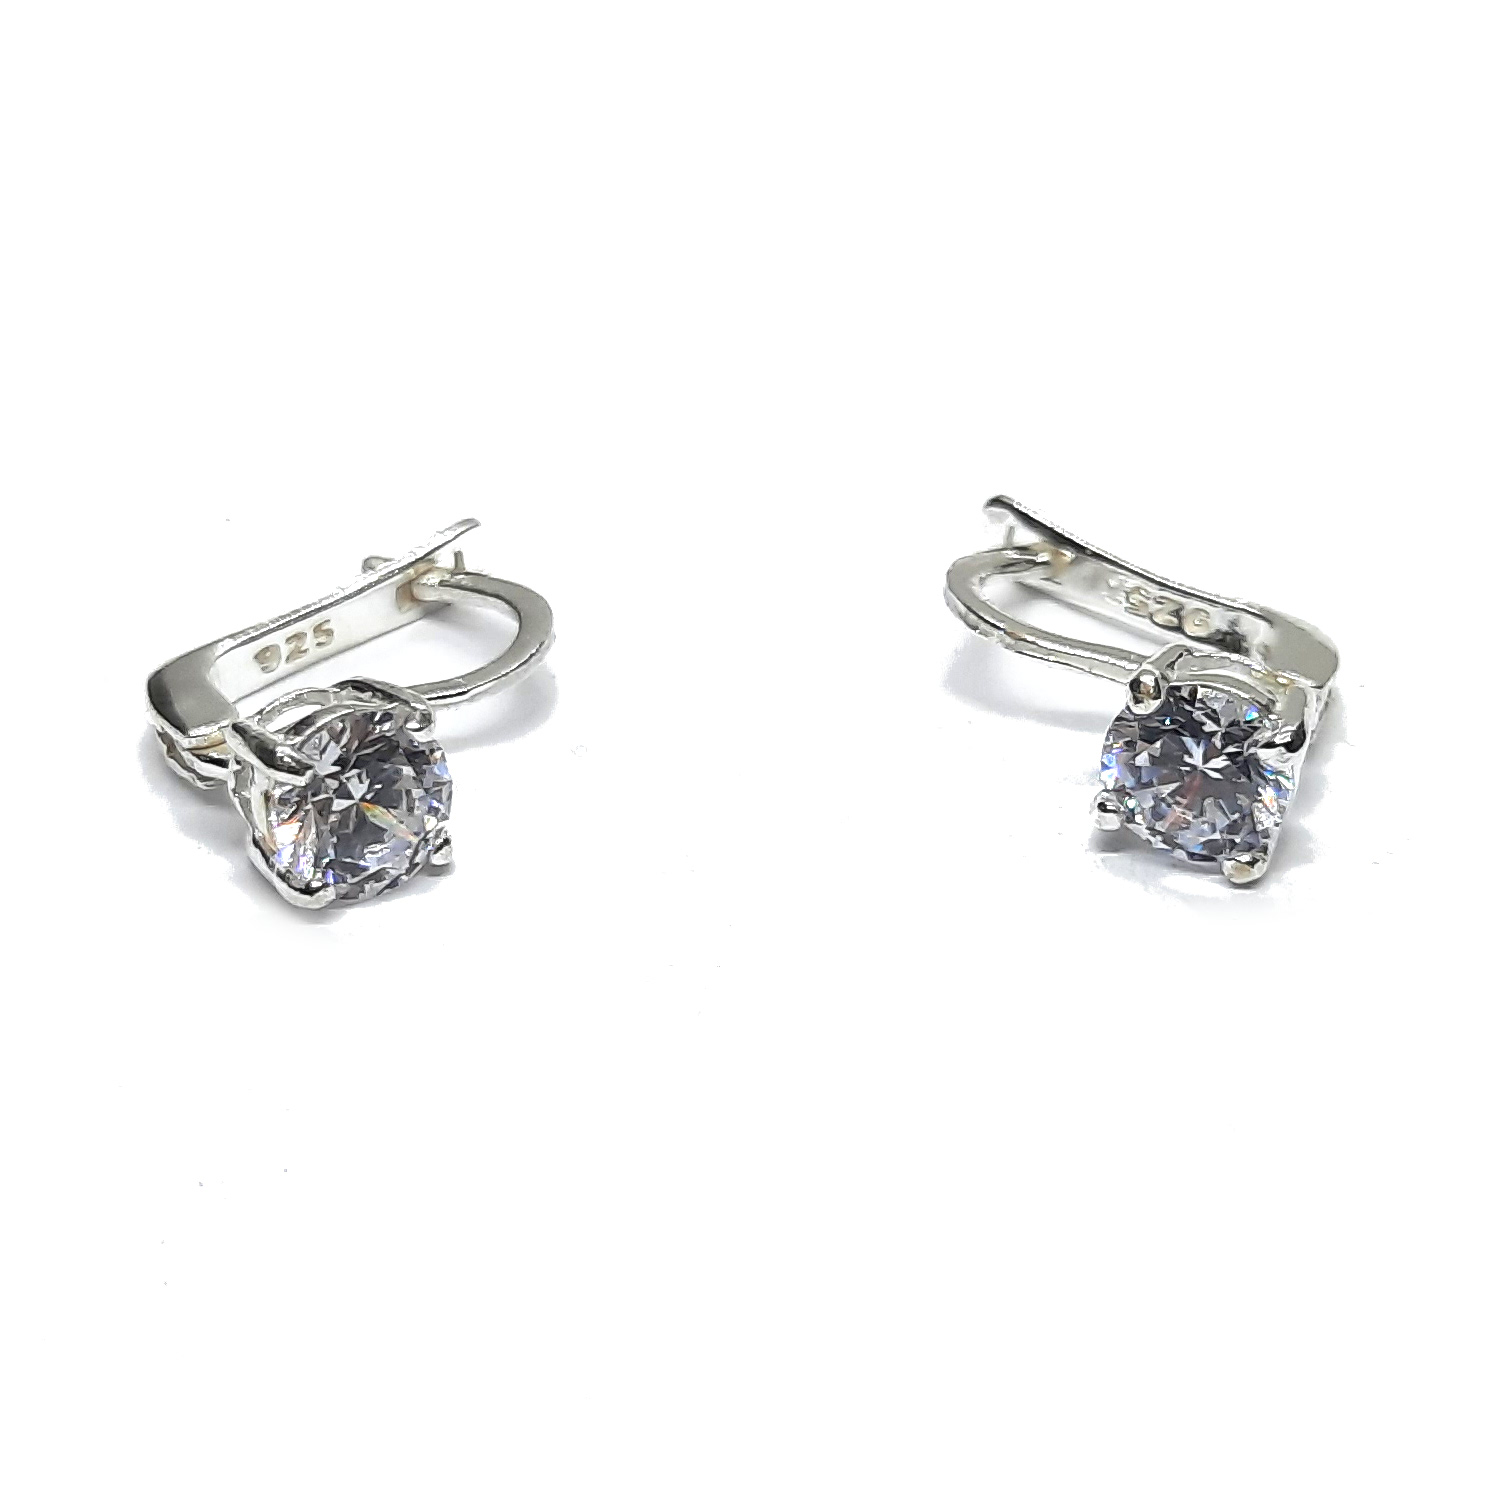 Silver earrings - E000901